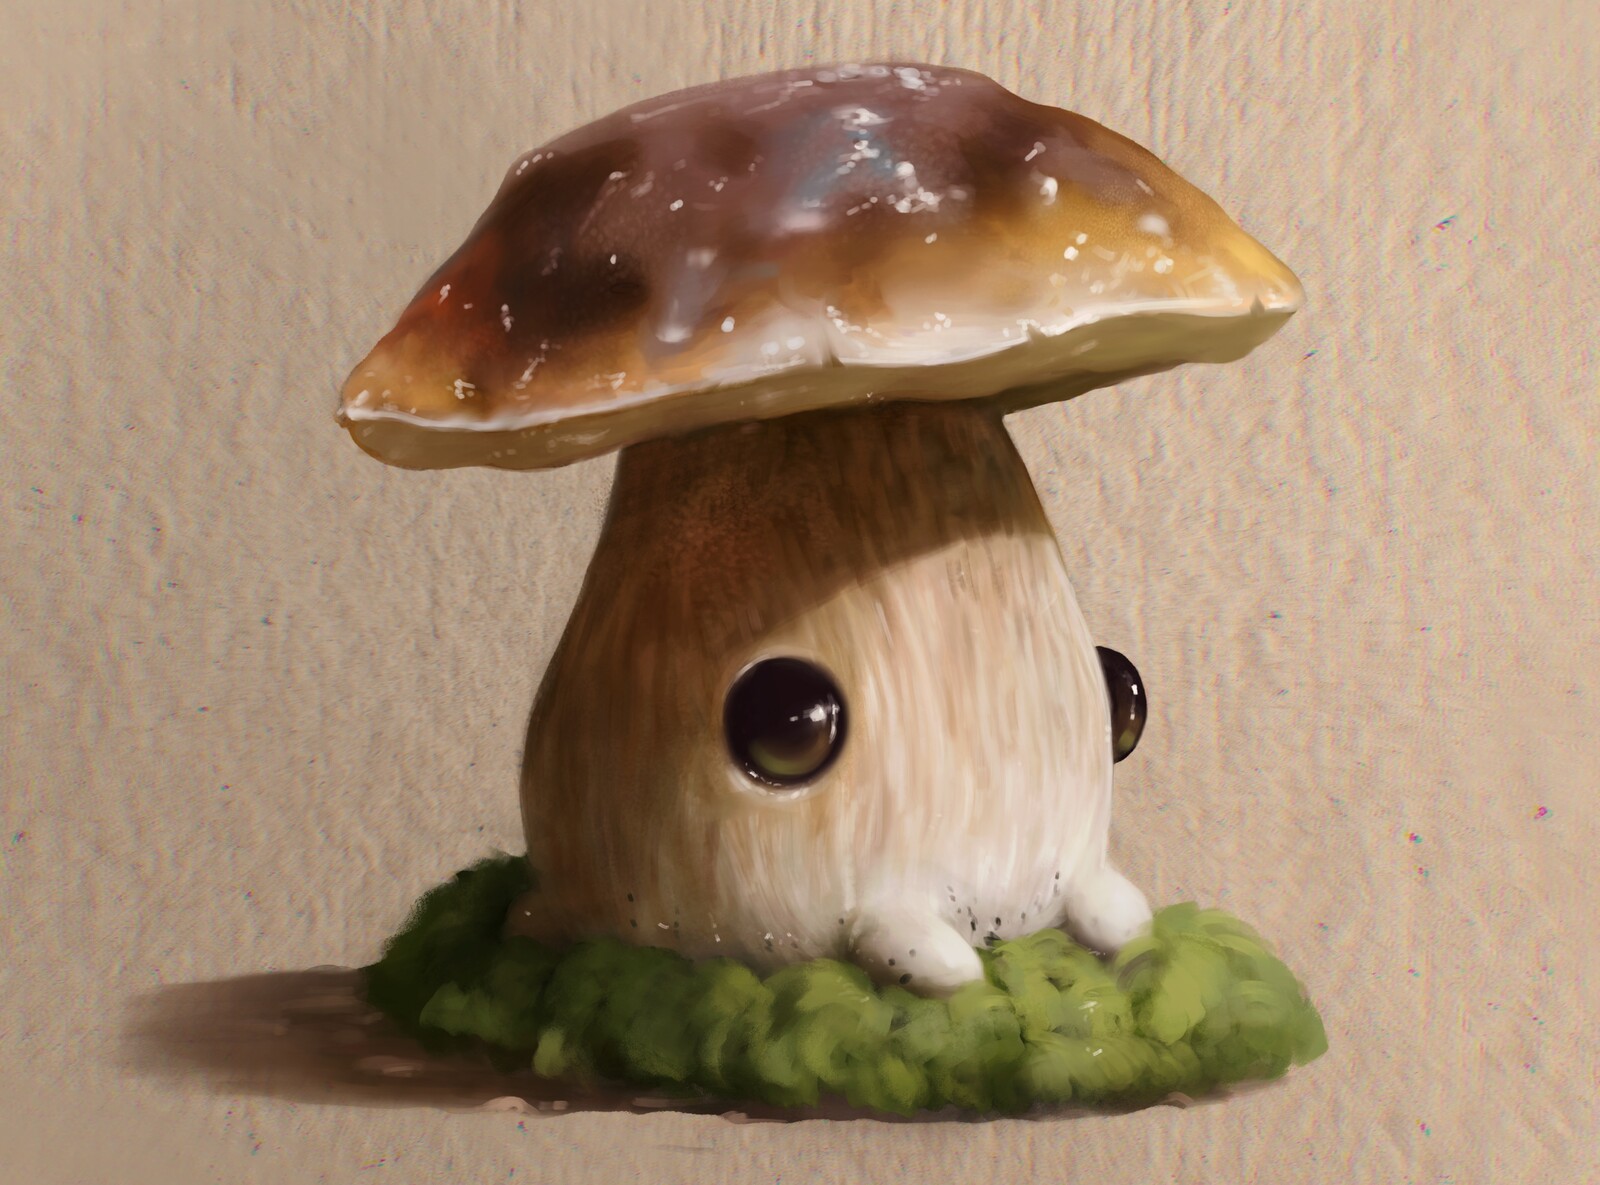 Mushroom creature pt2 